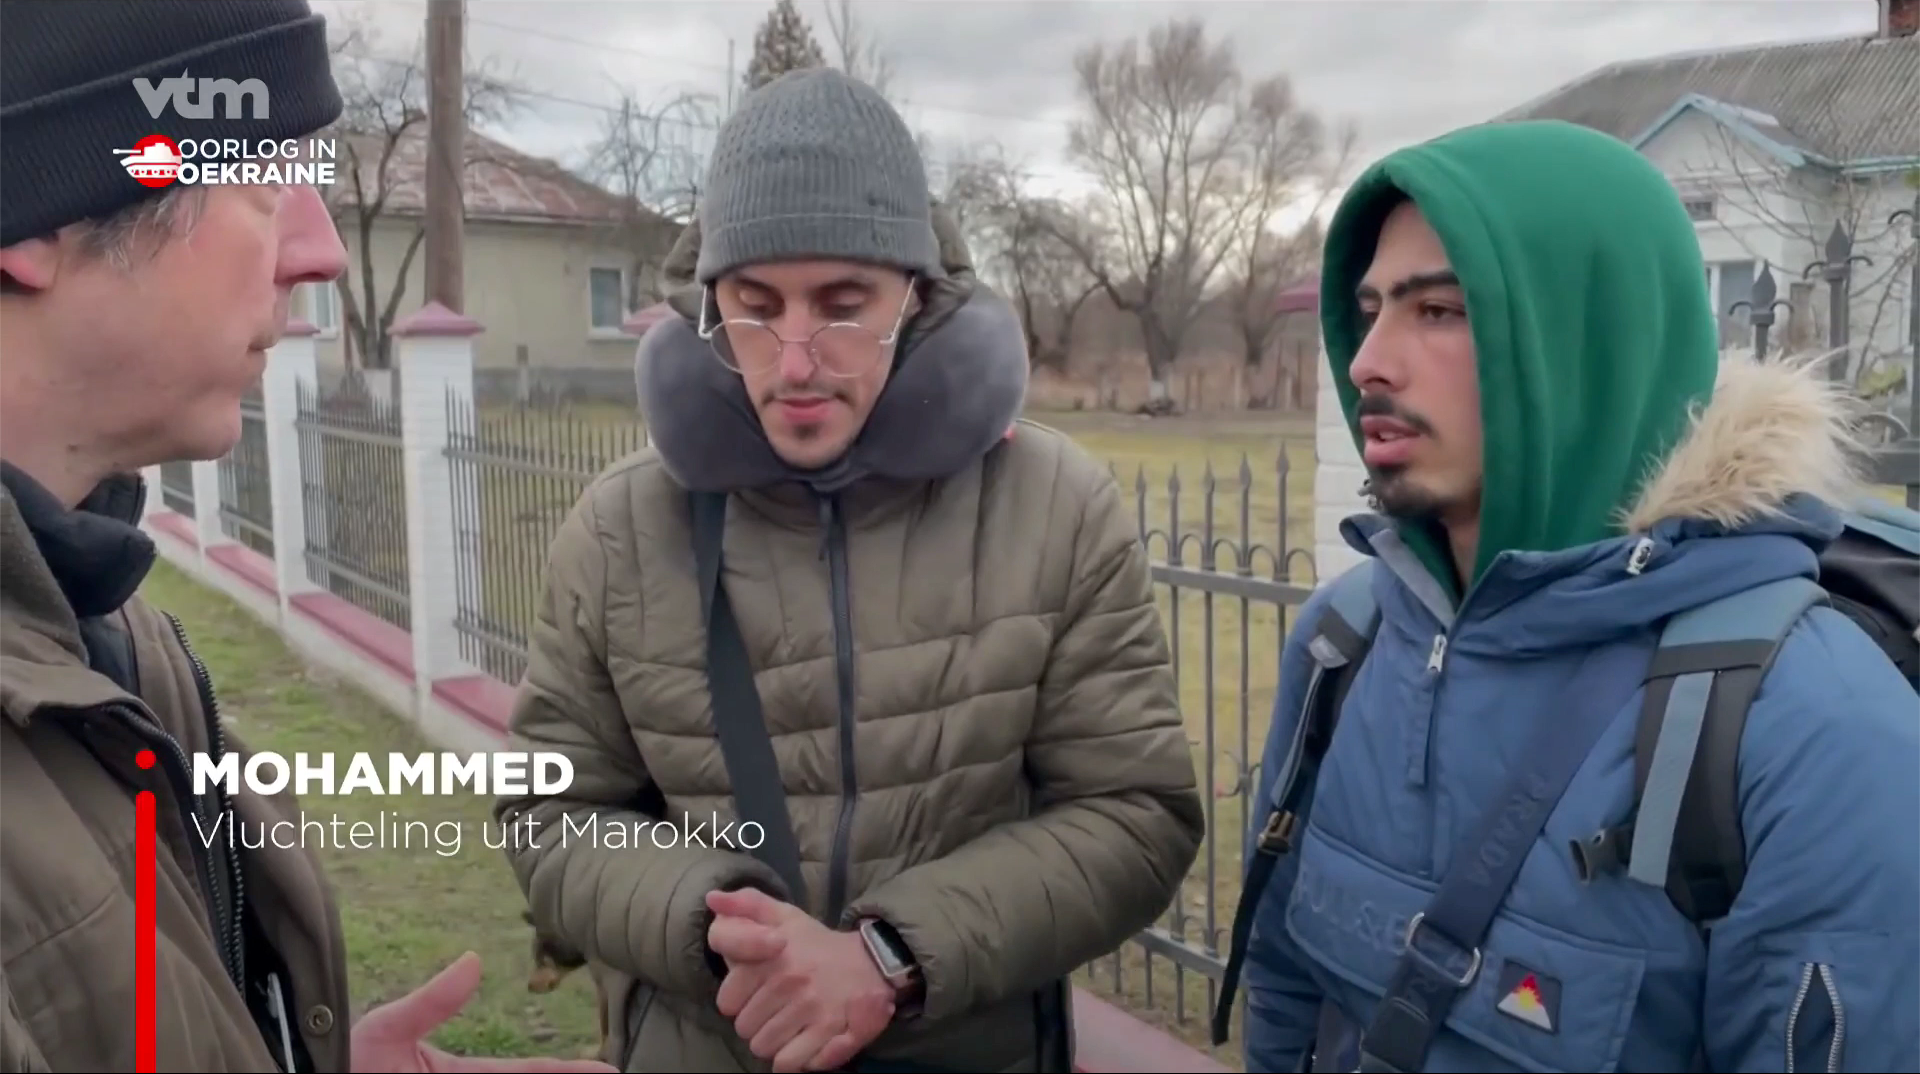 Vluchtelingen van kleur die zelf aangaven te studeren in Oekraïne werden in de ondertitels van de VTM-reportage prompt bestempeld als "vluchteling uit Marokko".